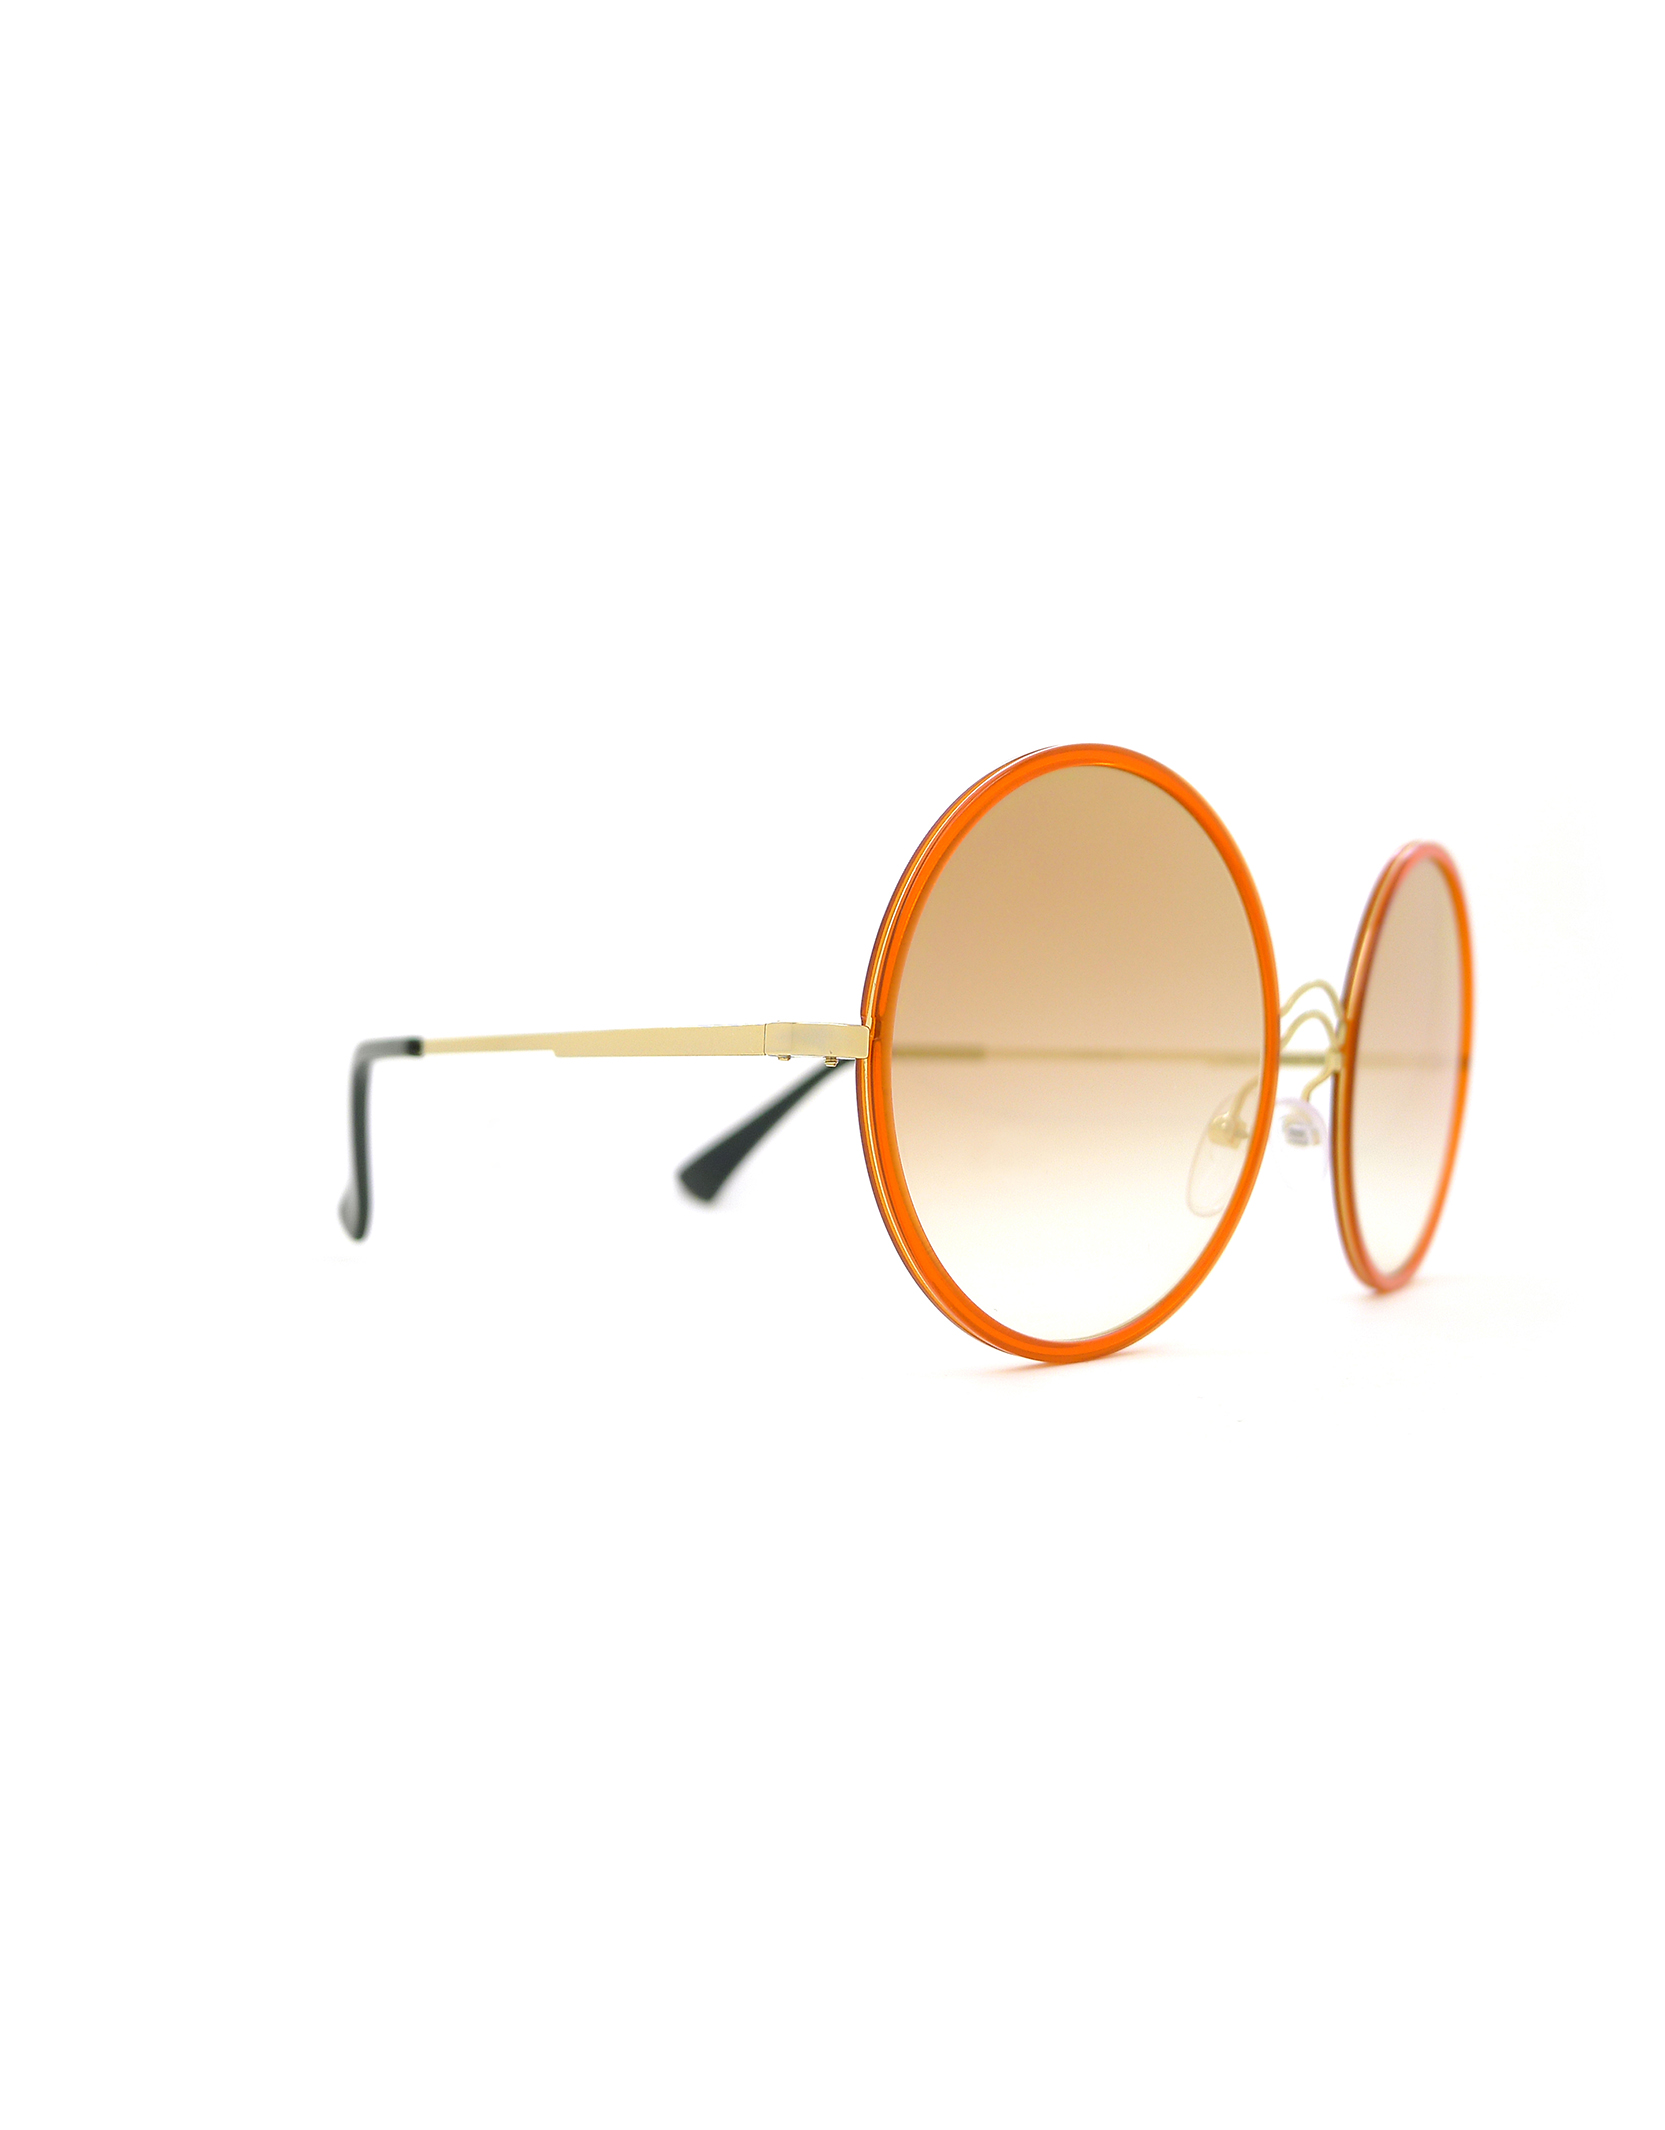 ZERO 14 Acetate Windsor Rim Orange/Grad Rose Gold - Luxury Sunglasses ...